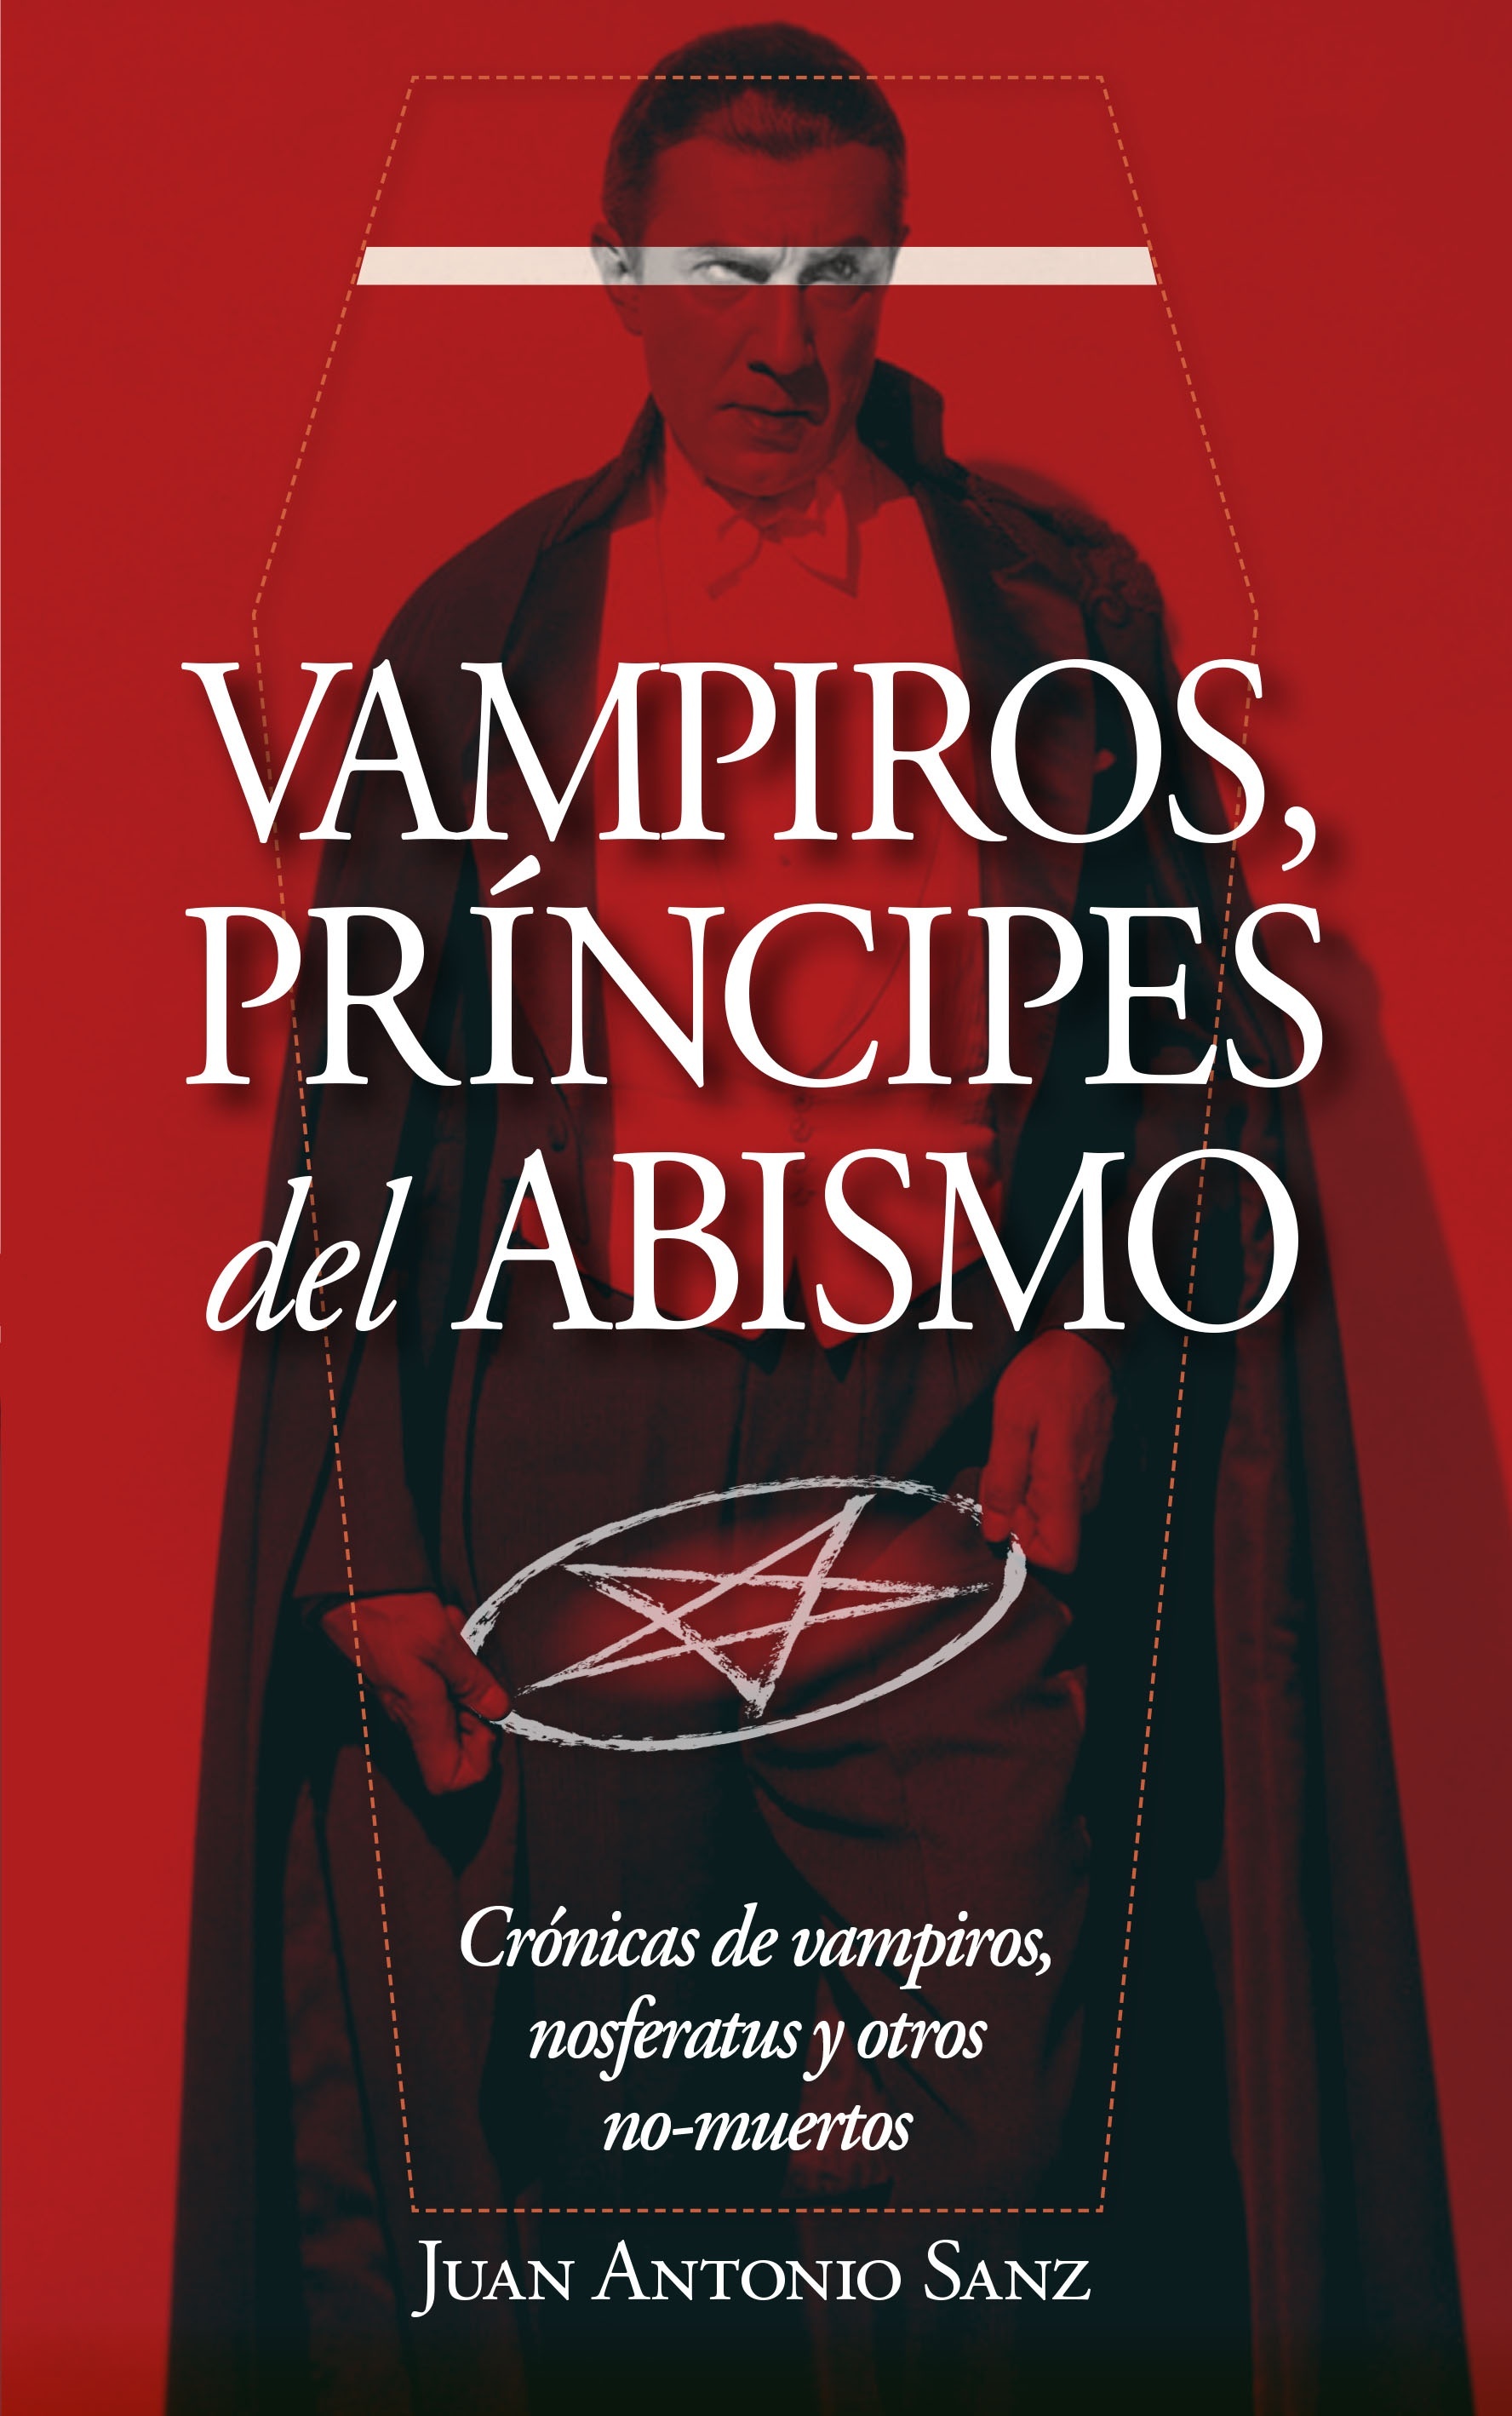 Vampiros, príncipes del abismo "Crónicas de vampiros, nosferatus y otros no-muertos"